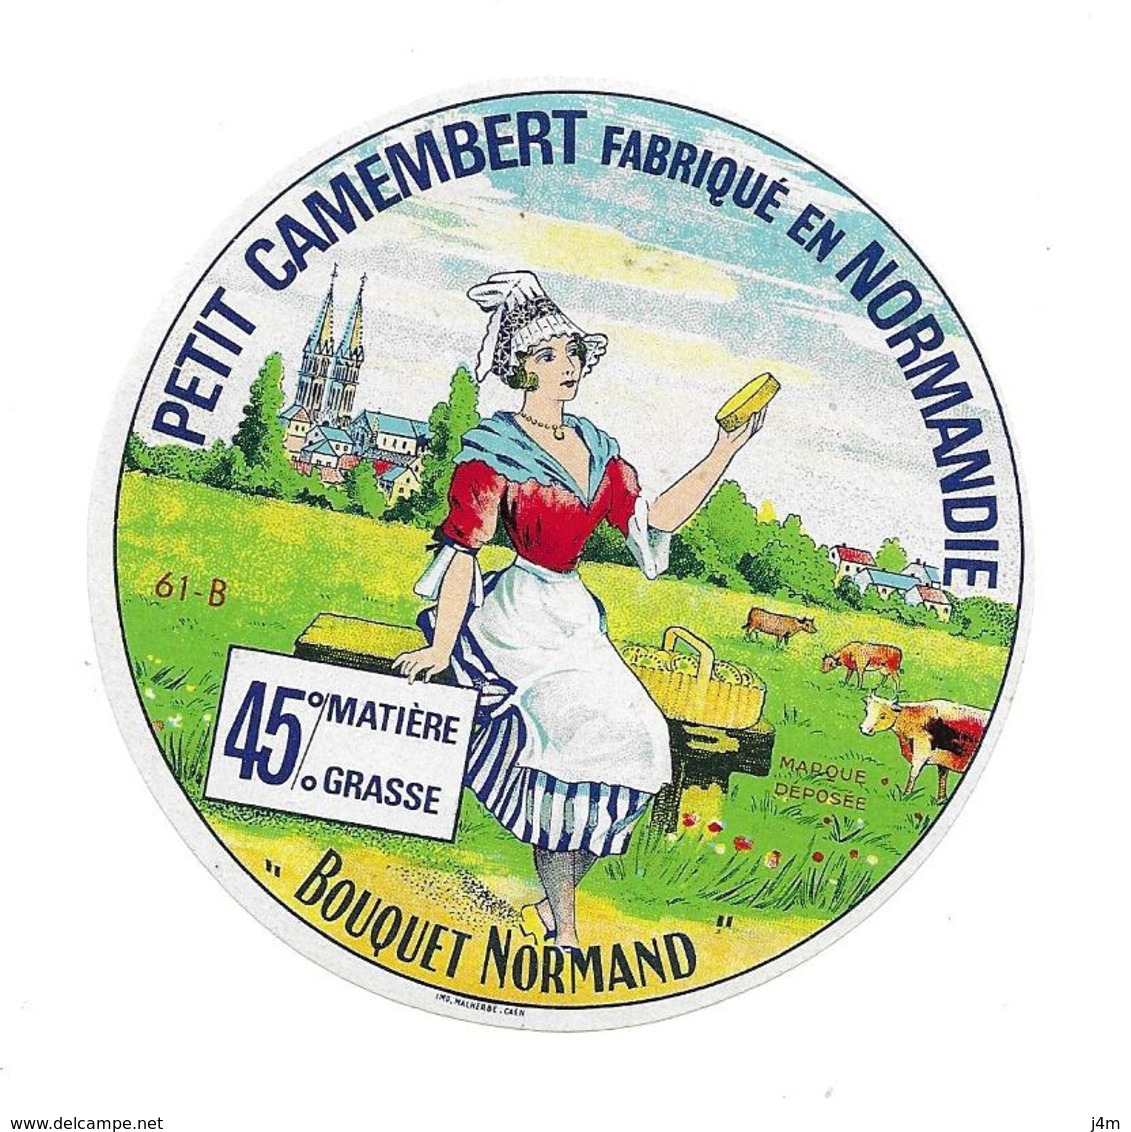 ETIQUETTE De FROMAGE..Petit CAMEMBERT Fabriqué En NORMANDIE (Orne 61-B)..Bouquet Normand - Cheese